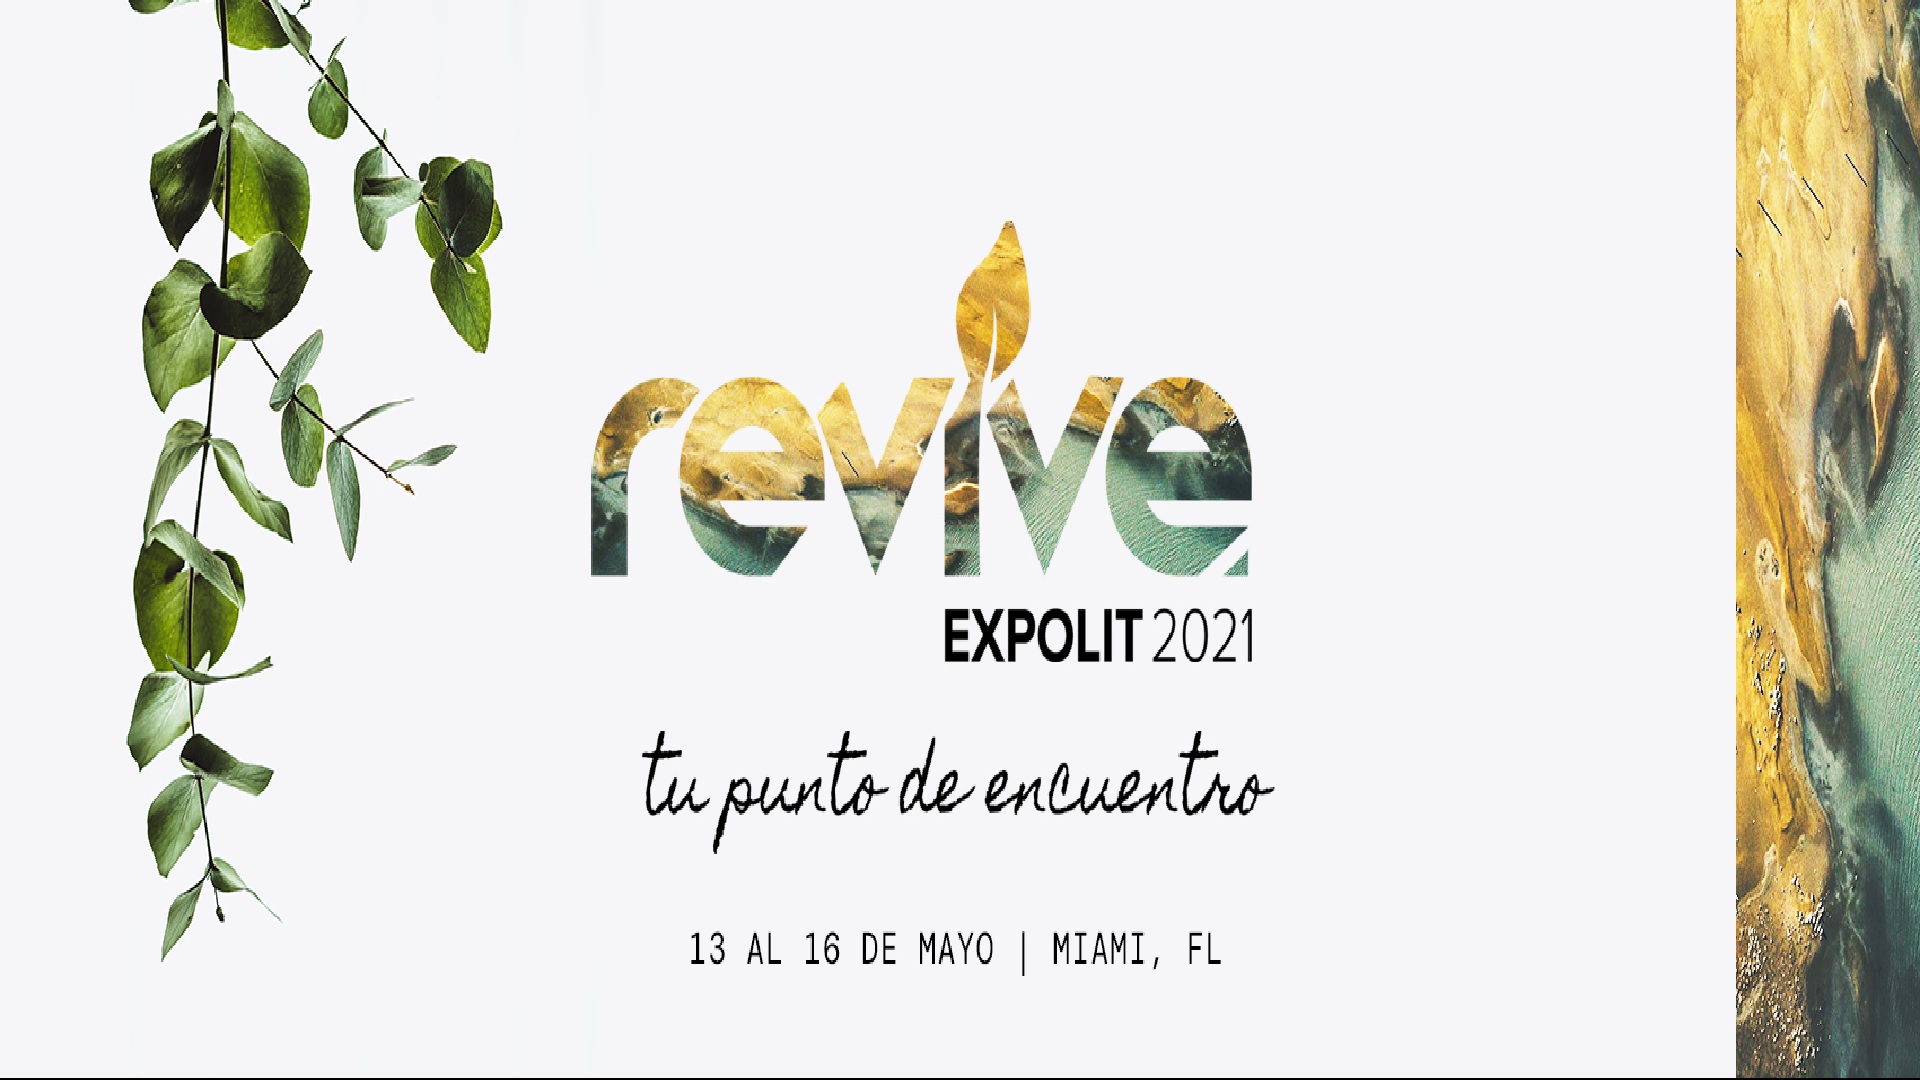 Del 13 al 16 de Mayo se llevará a cabo “Revive Expolit 2021” en Miami-dade